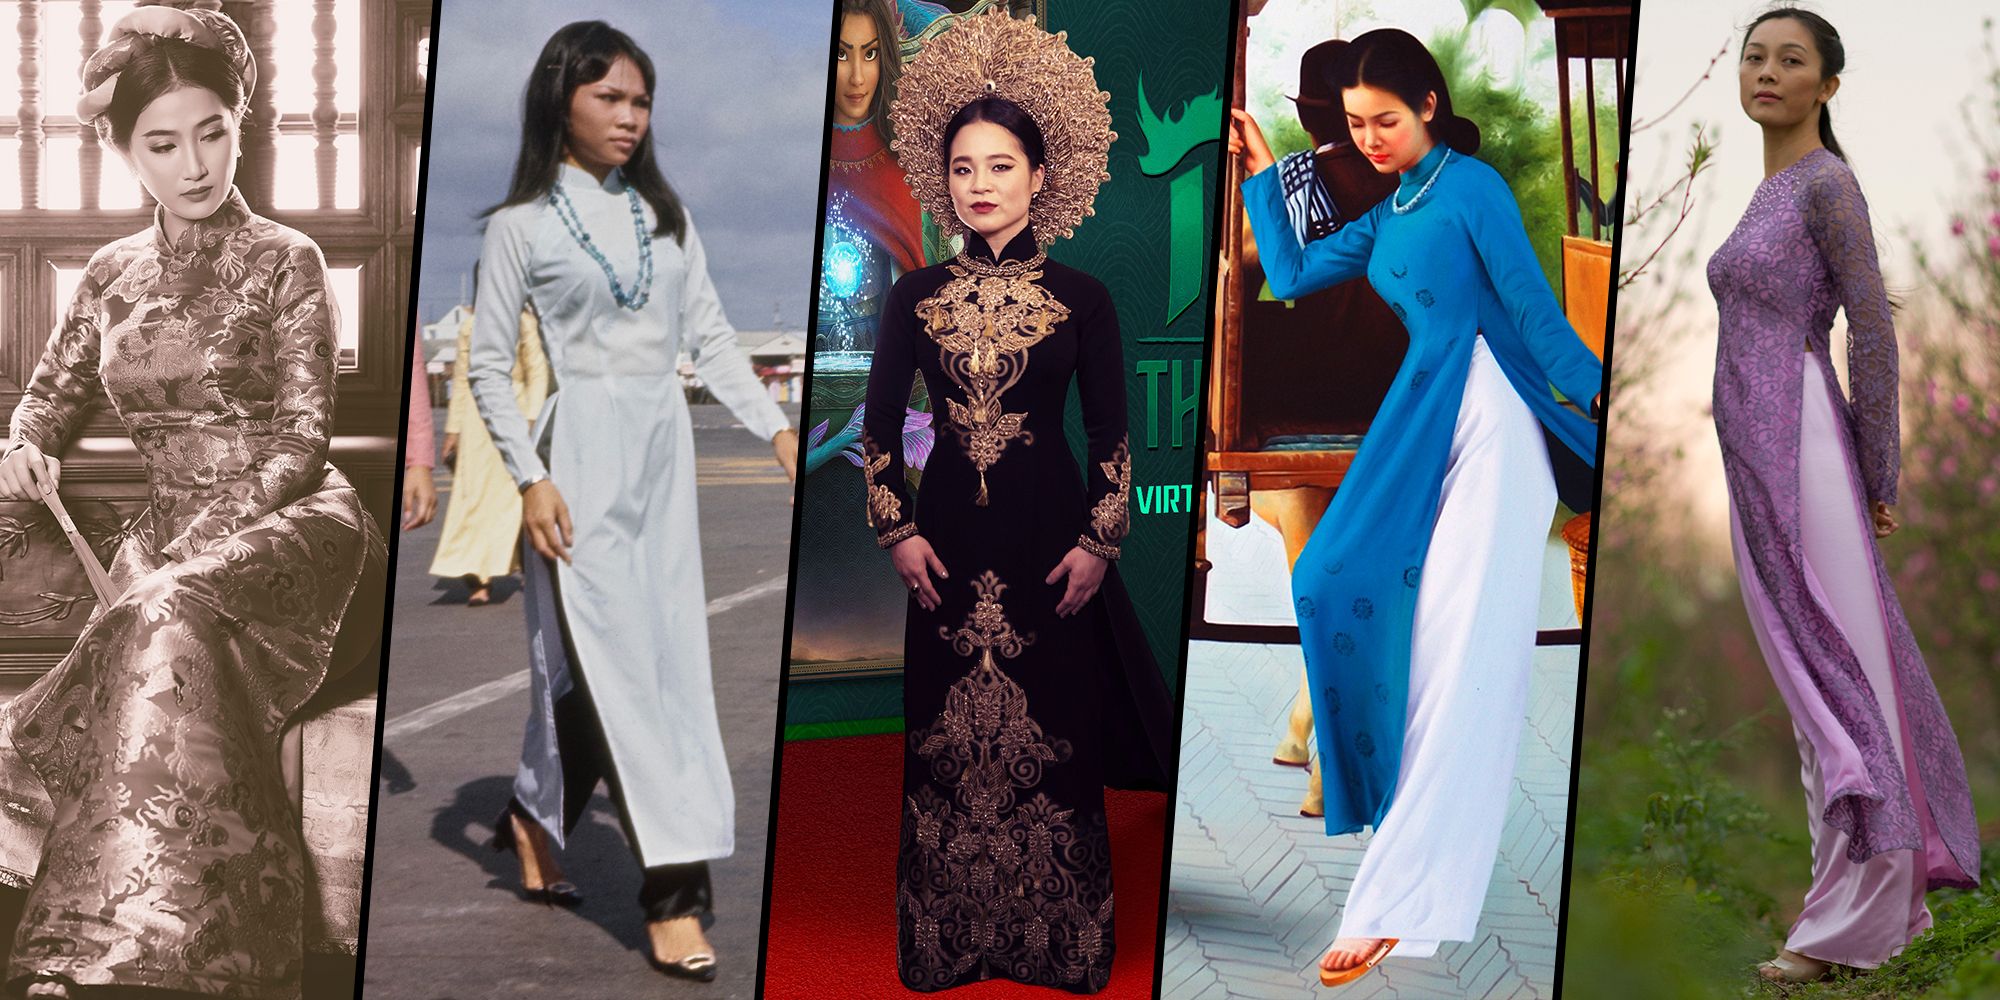 Vietnam Traditional Dress for Women New Catwalk Show Long